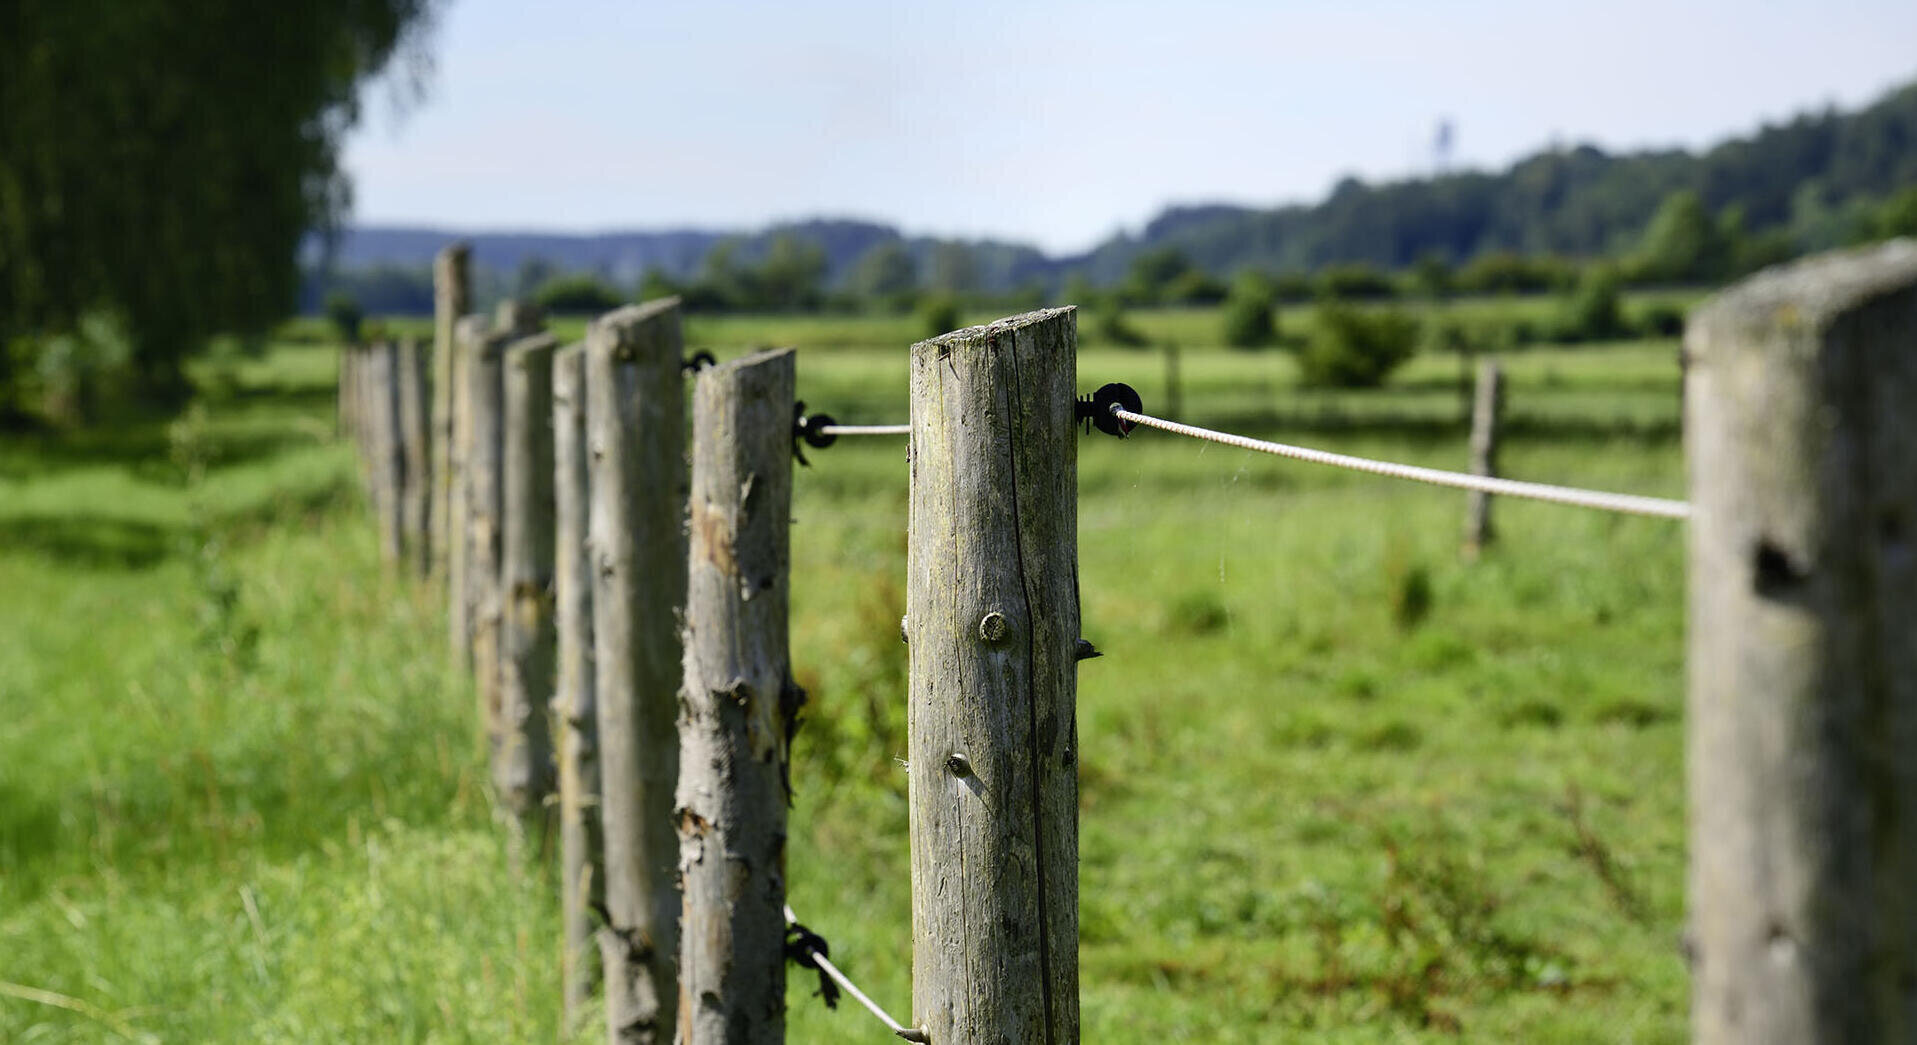 Fil de tension galvanisé Pour les clôtures agricoles - Achetez en